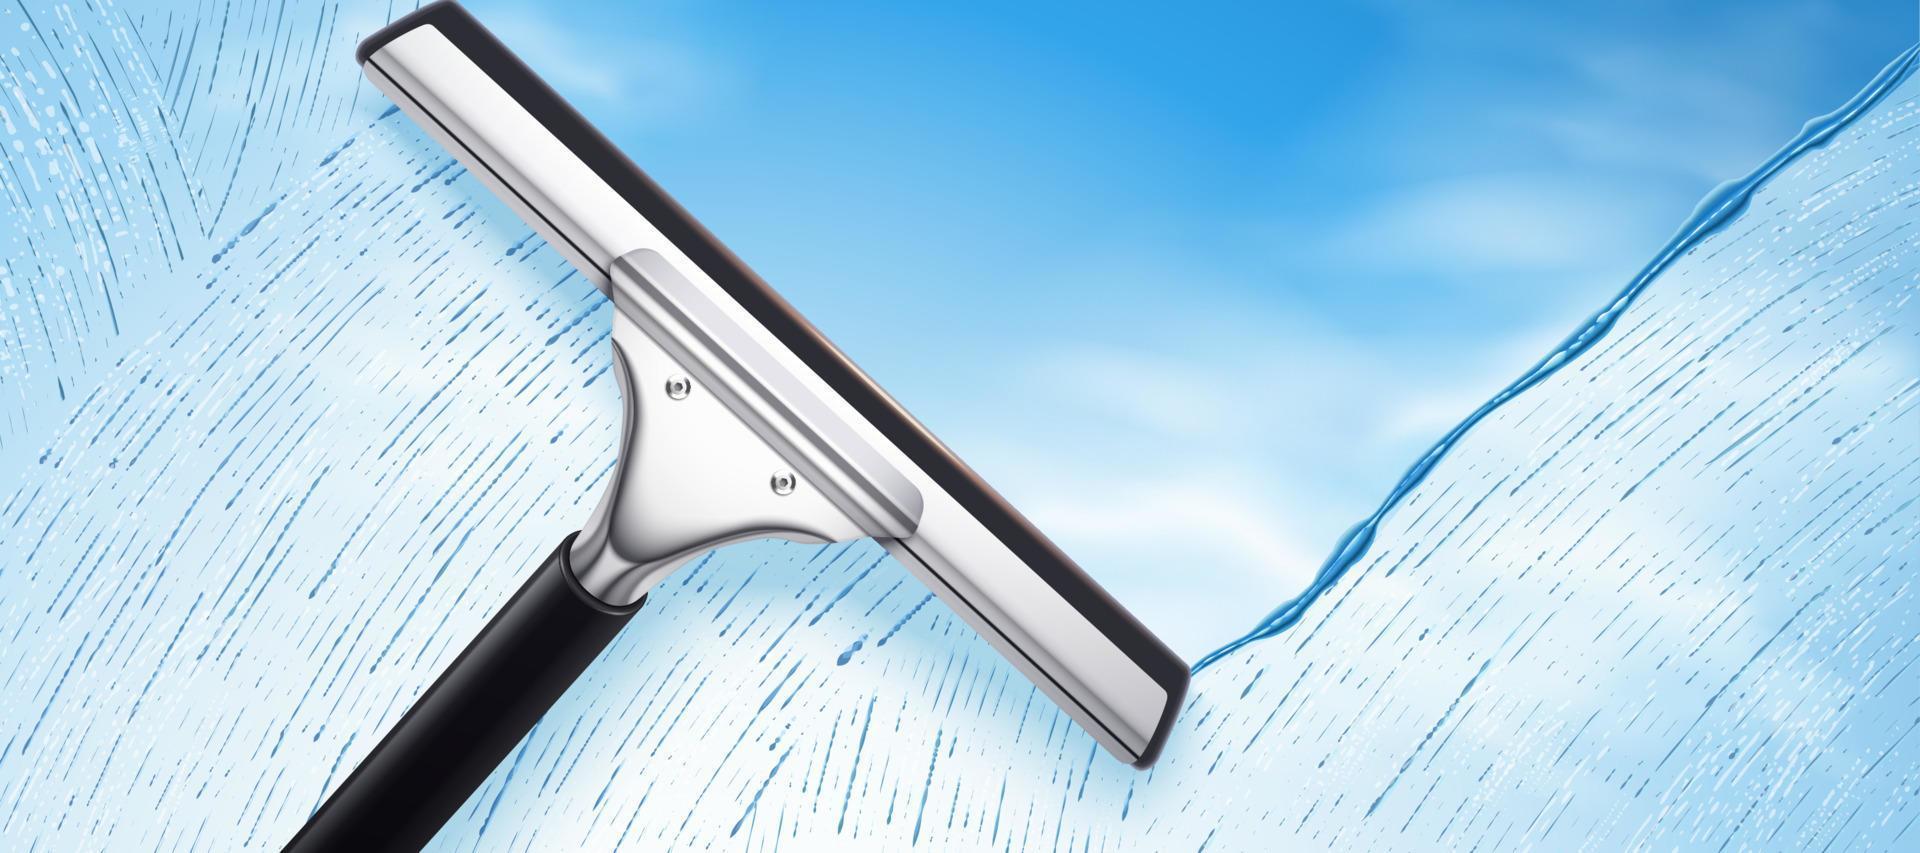 zuigmond schoonmaak glas tegen blauw lucht achtergrond in 3d illustratie, advertentie achtergrond voor glas schoonmaak Product vector